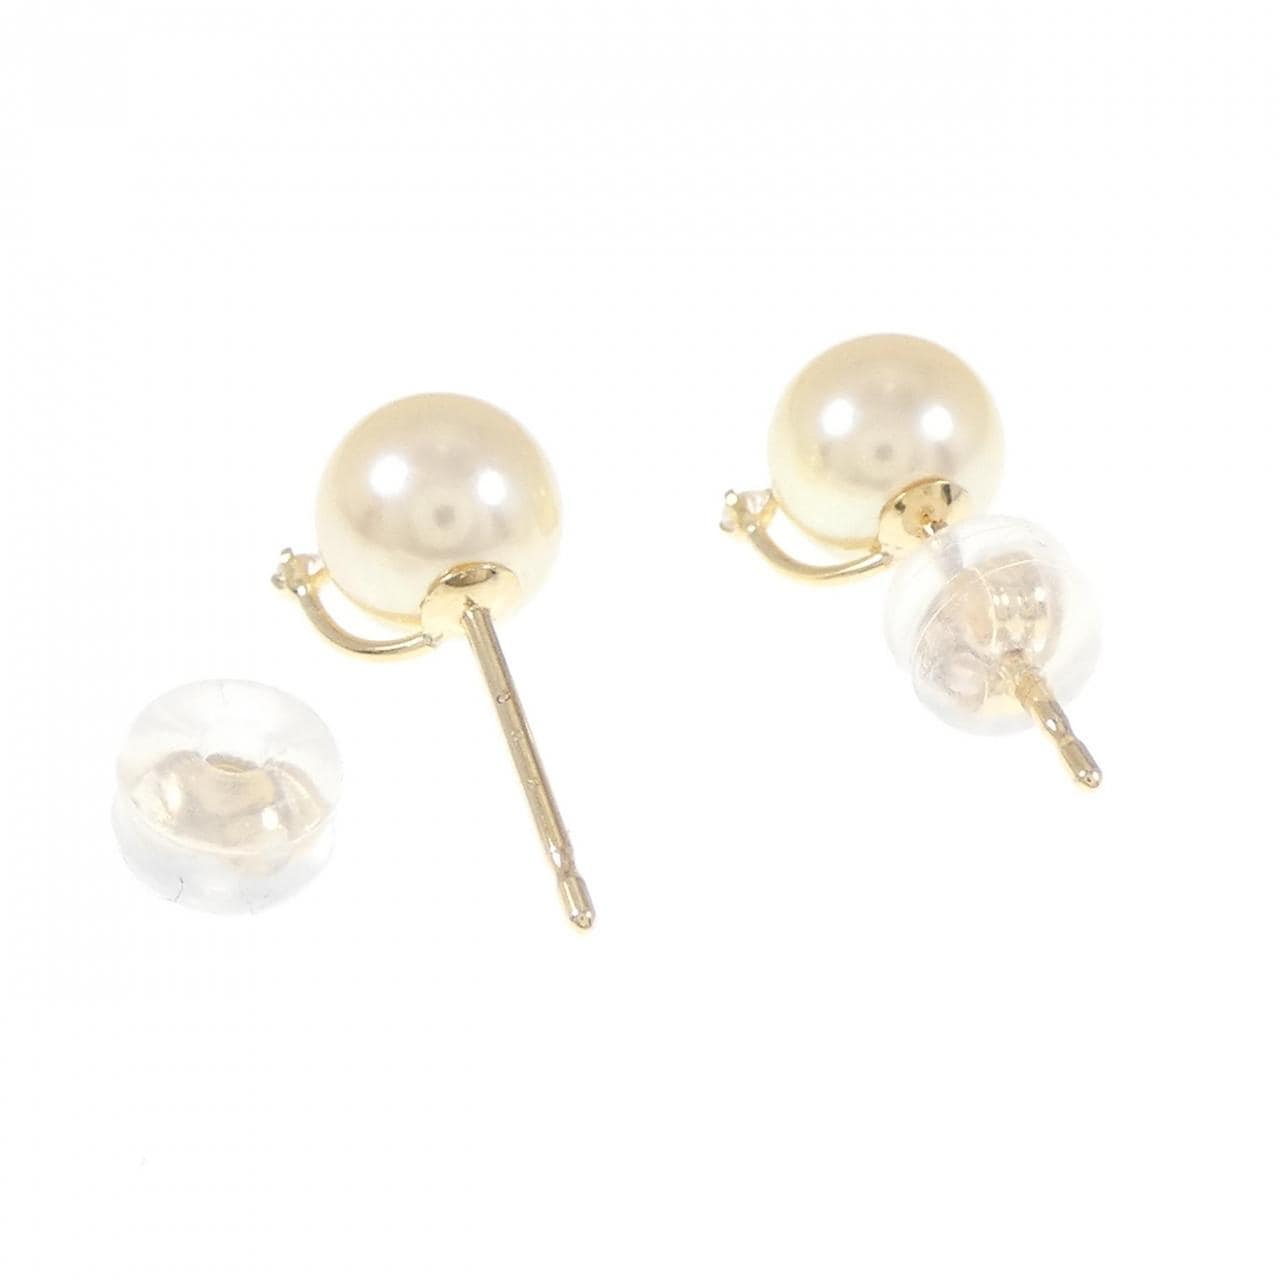 K18YG Akoya pearl earrings 6.5mm